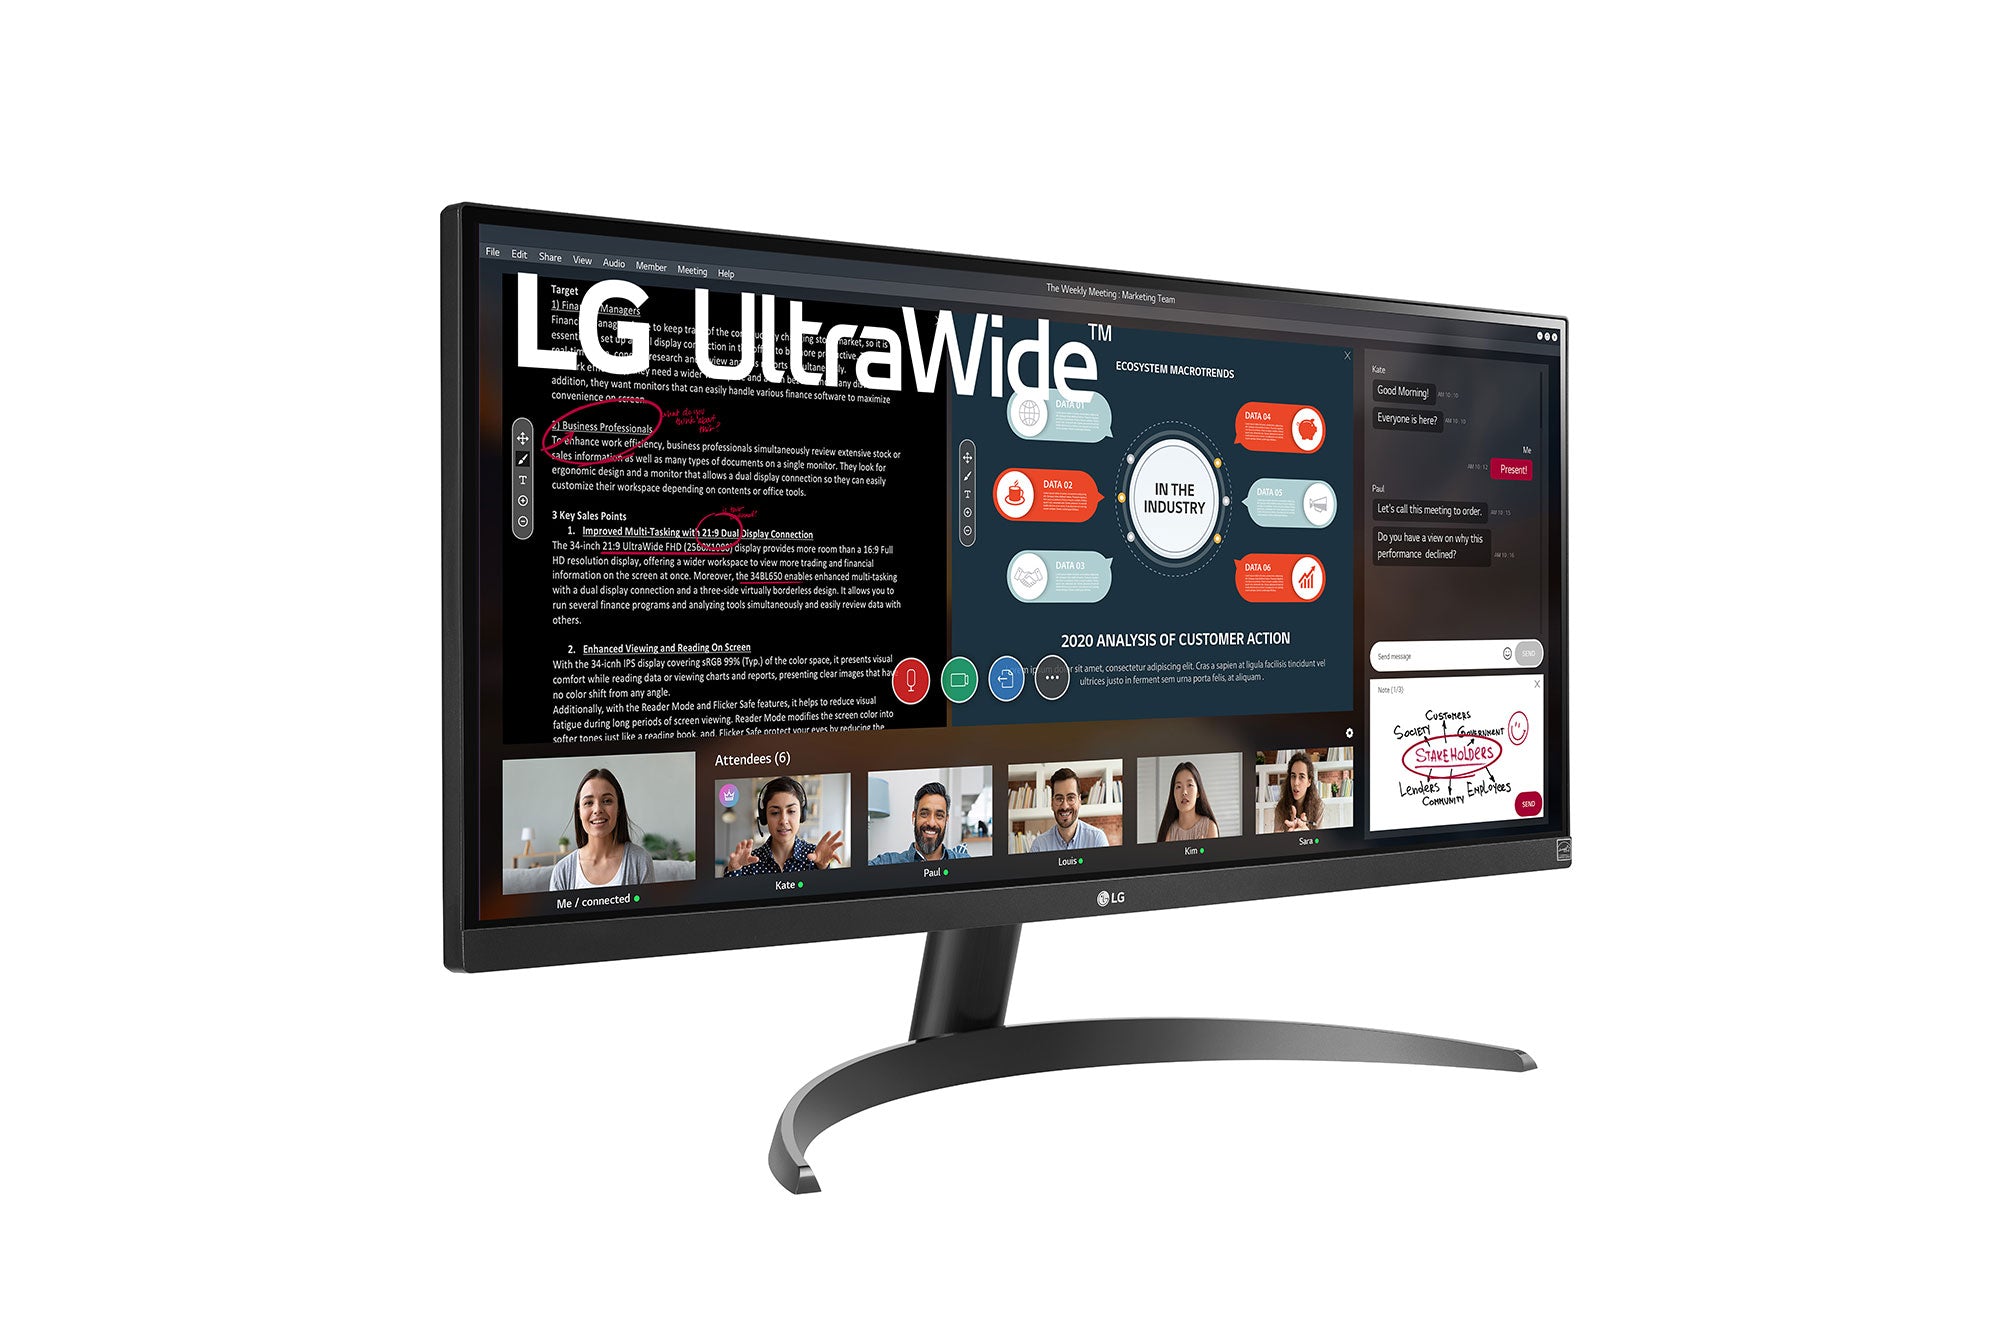 LG 29WP500 UltraWide Monitor / 29 inch / 2560 x 1080 Resolution / AMD FreeSync / Dynamic Action Sync / Black Stabilizer